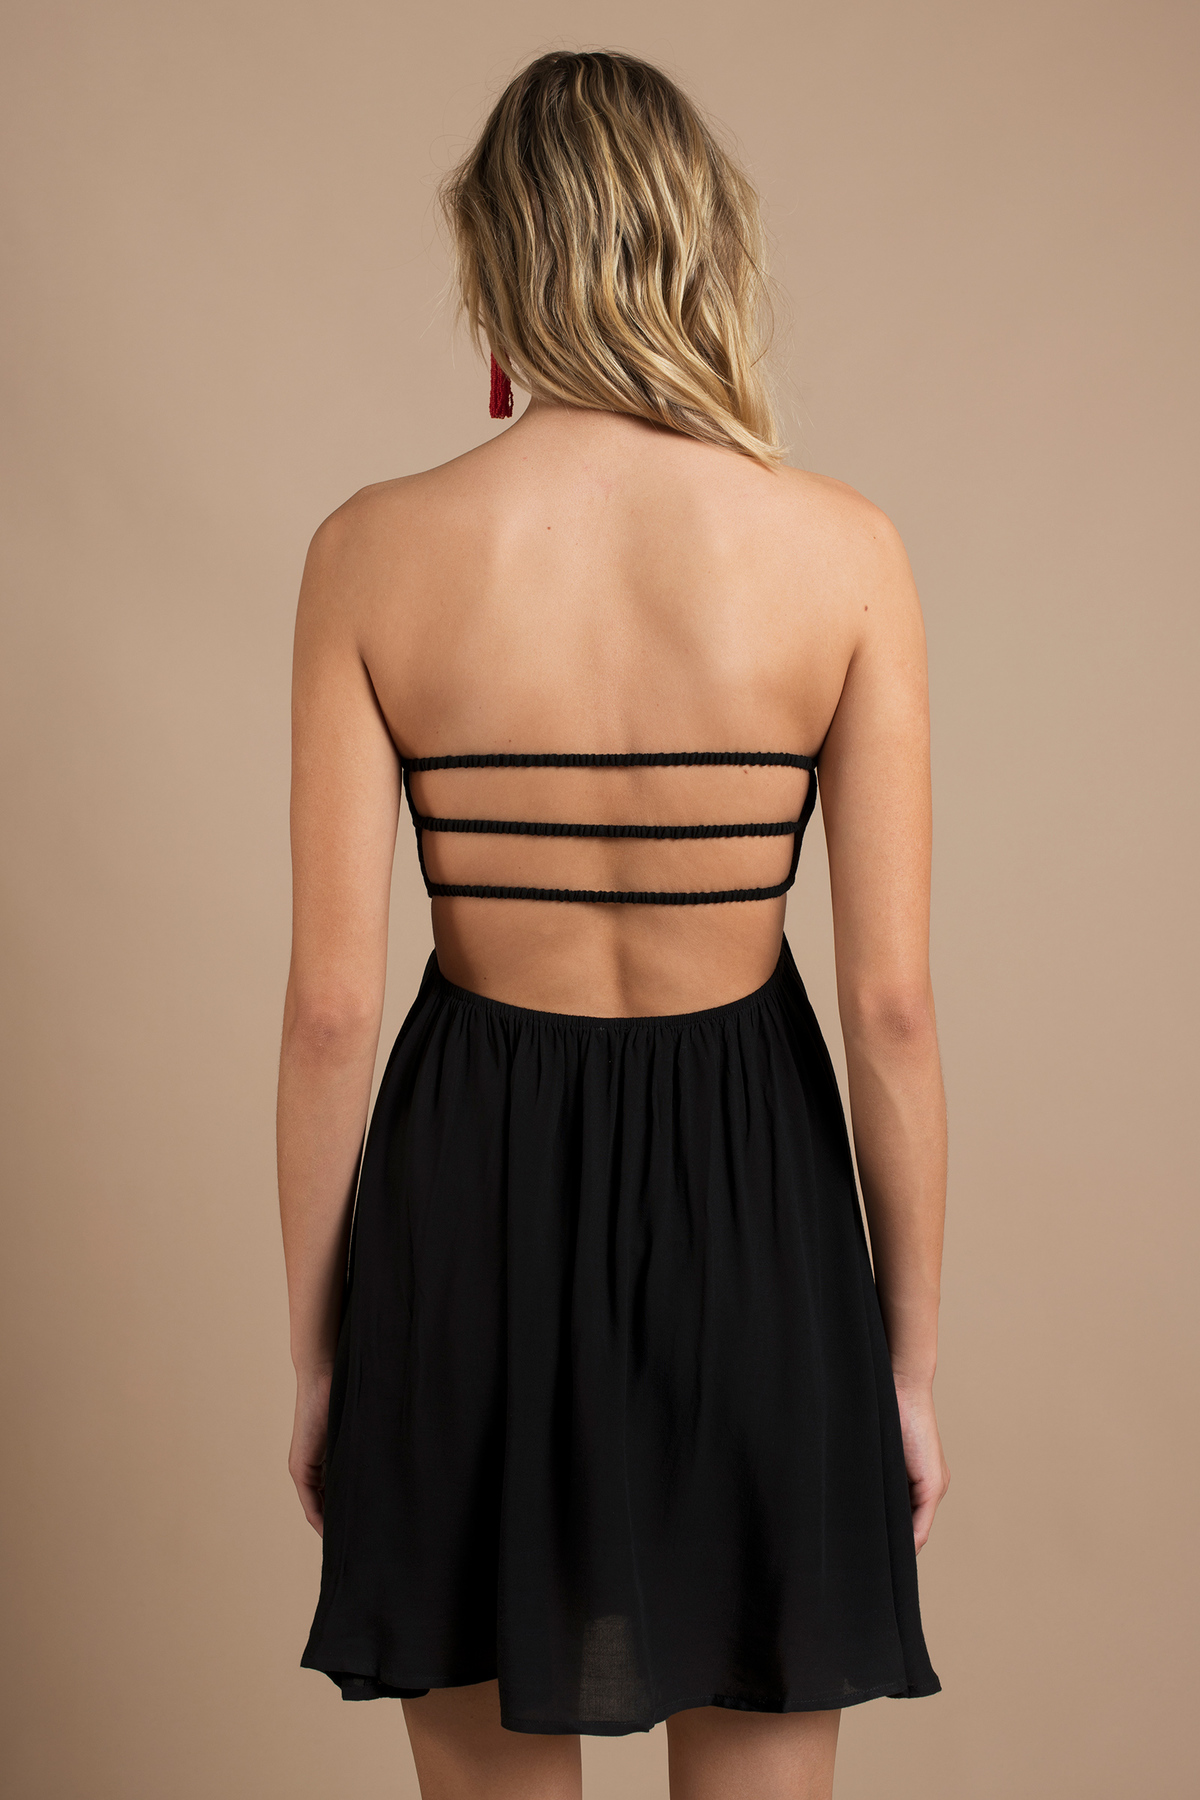 Sunny Shores Dress in Black - $10 | Tobi US